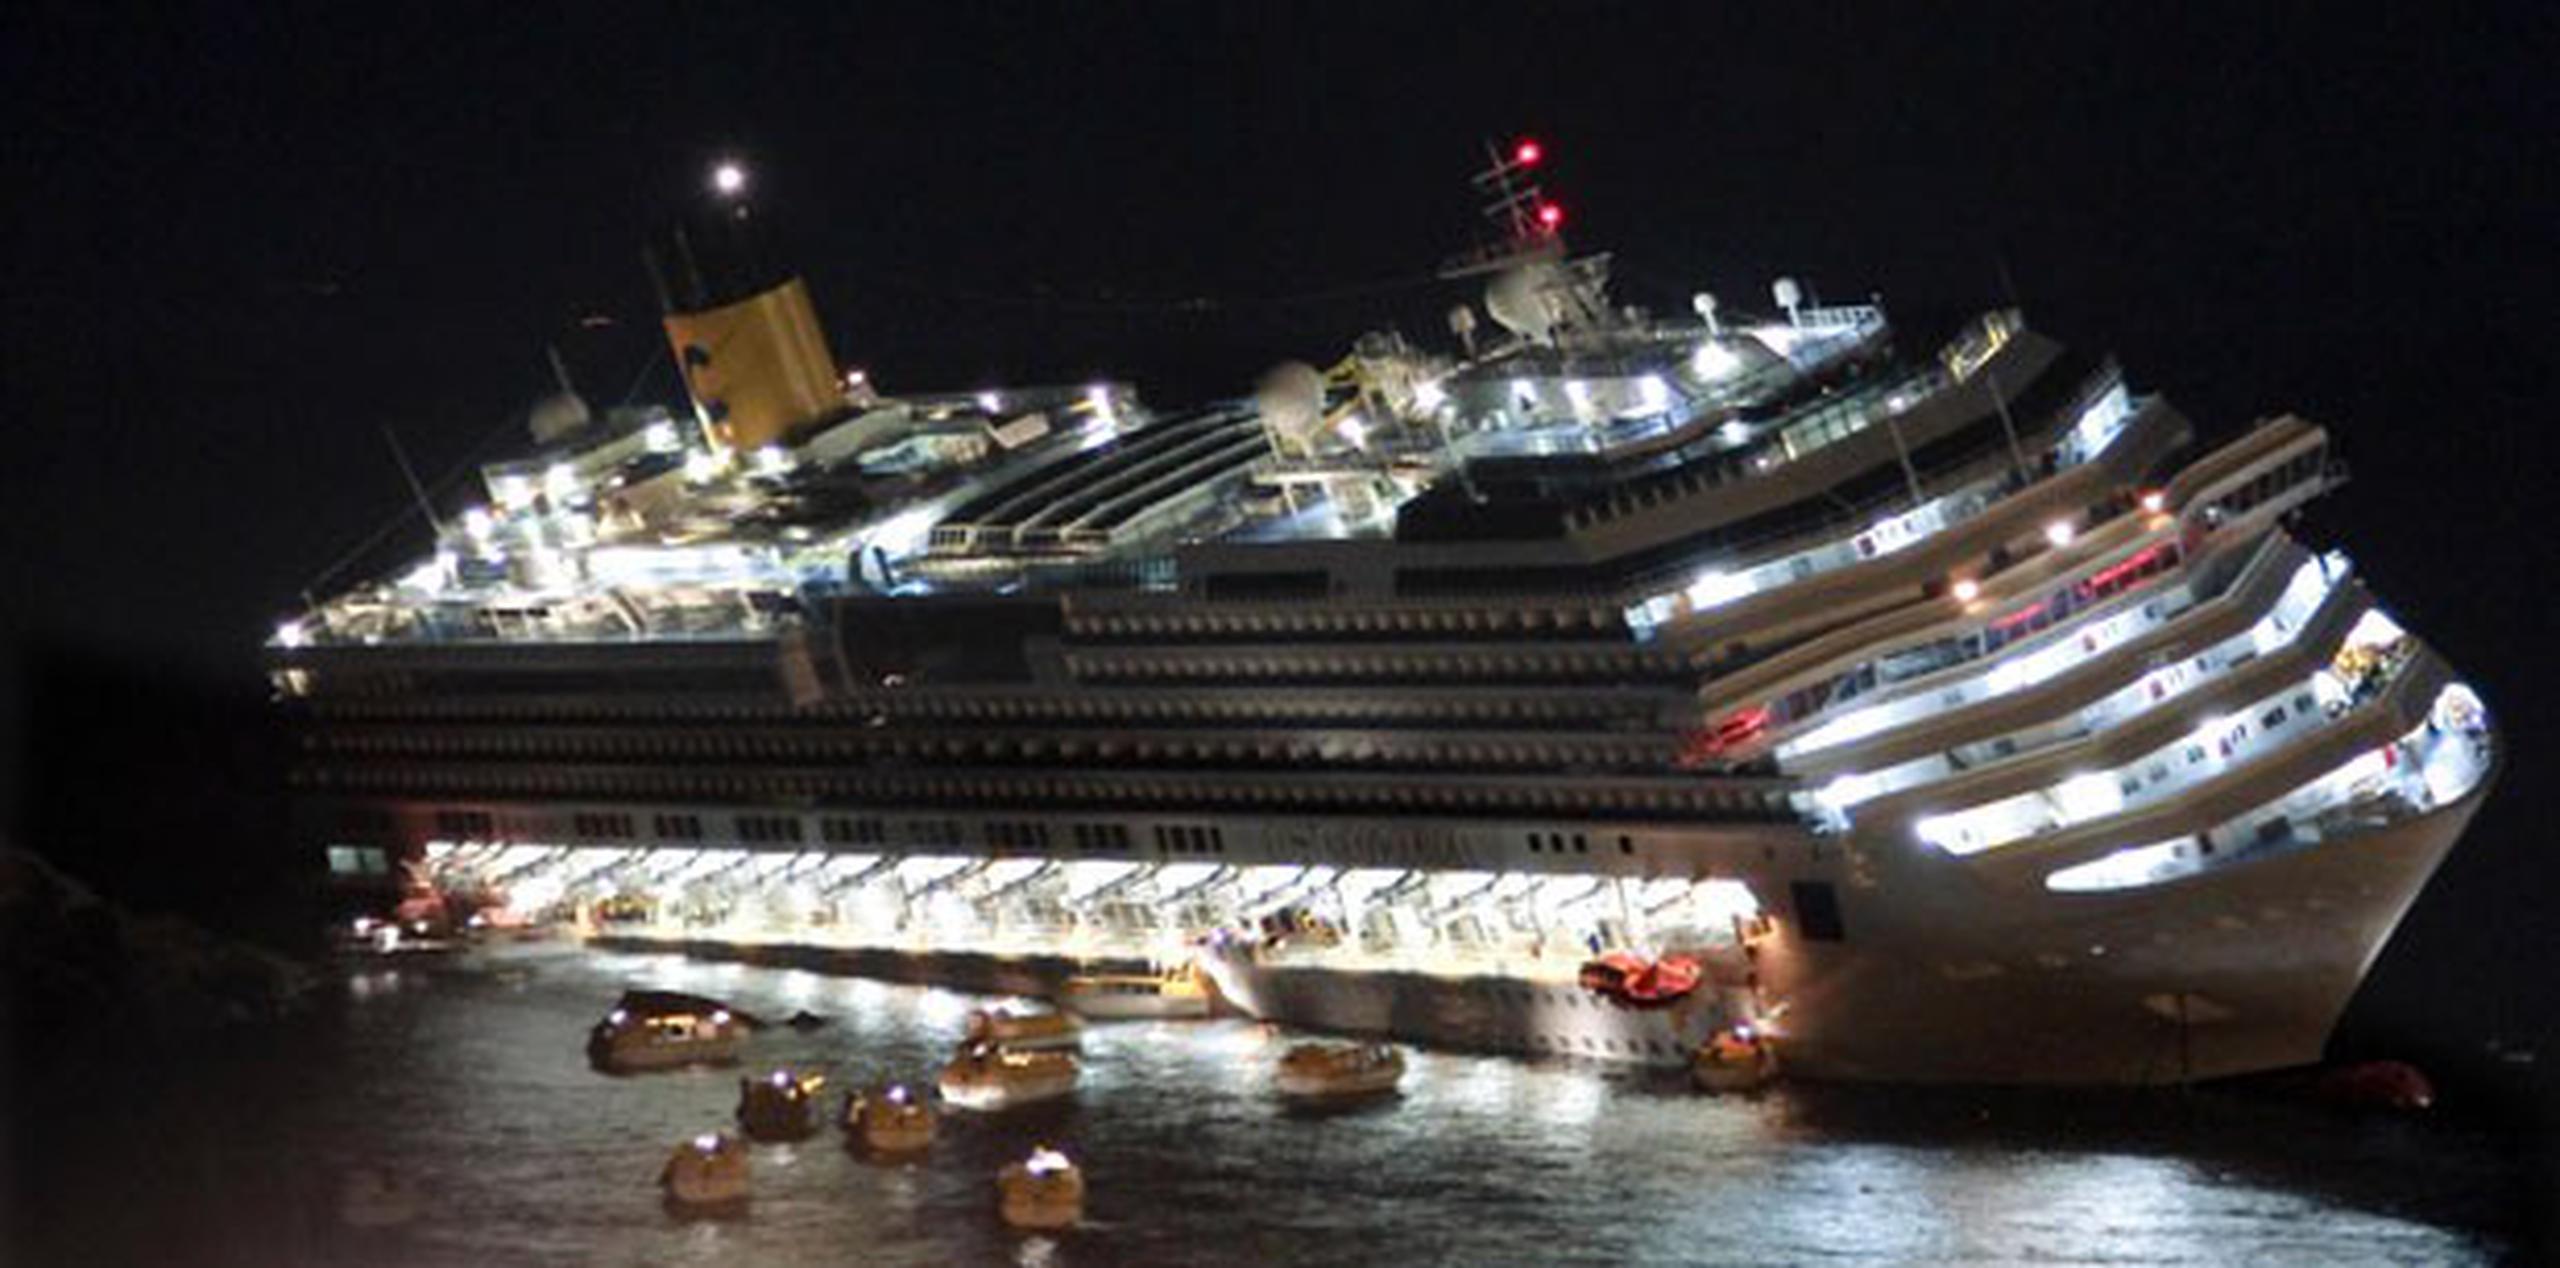 La tragedia se produjo la noche del 13 de enero de 2012 cuando el crucero, en el que viajaban 4,229 personas, encalló y naufragó en las costas de la isla del Giglio. (AP Photo/Giuseppe Modesti, File)